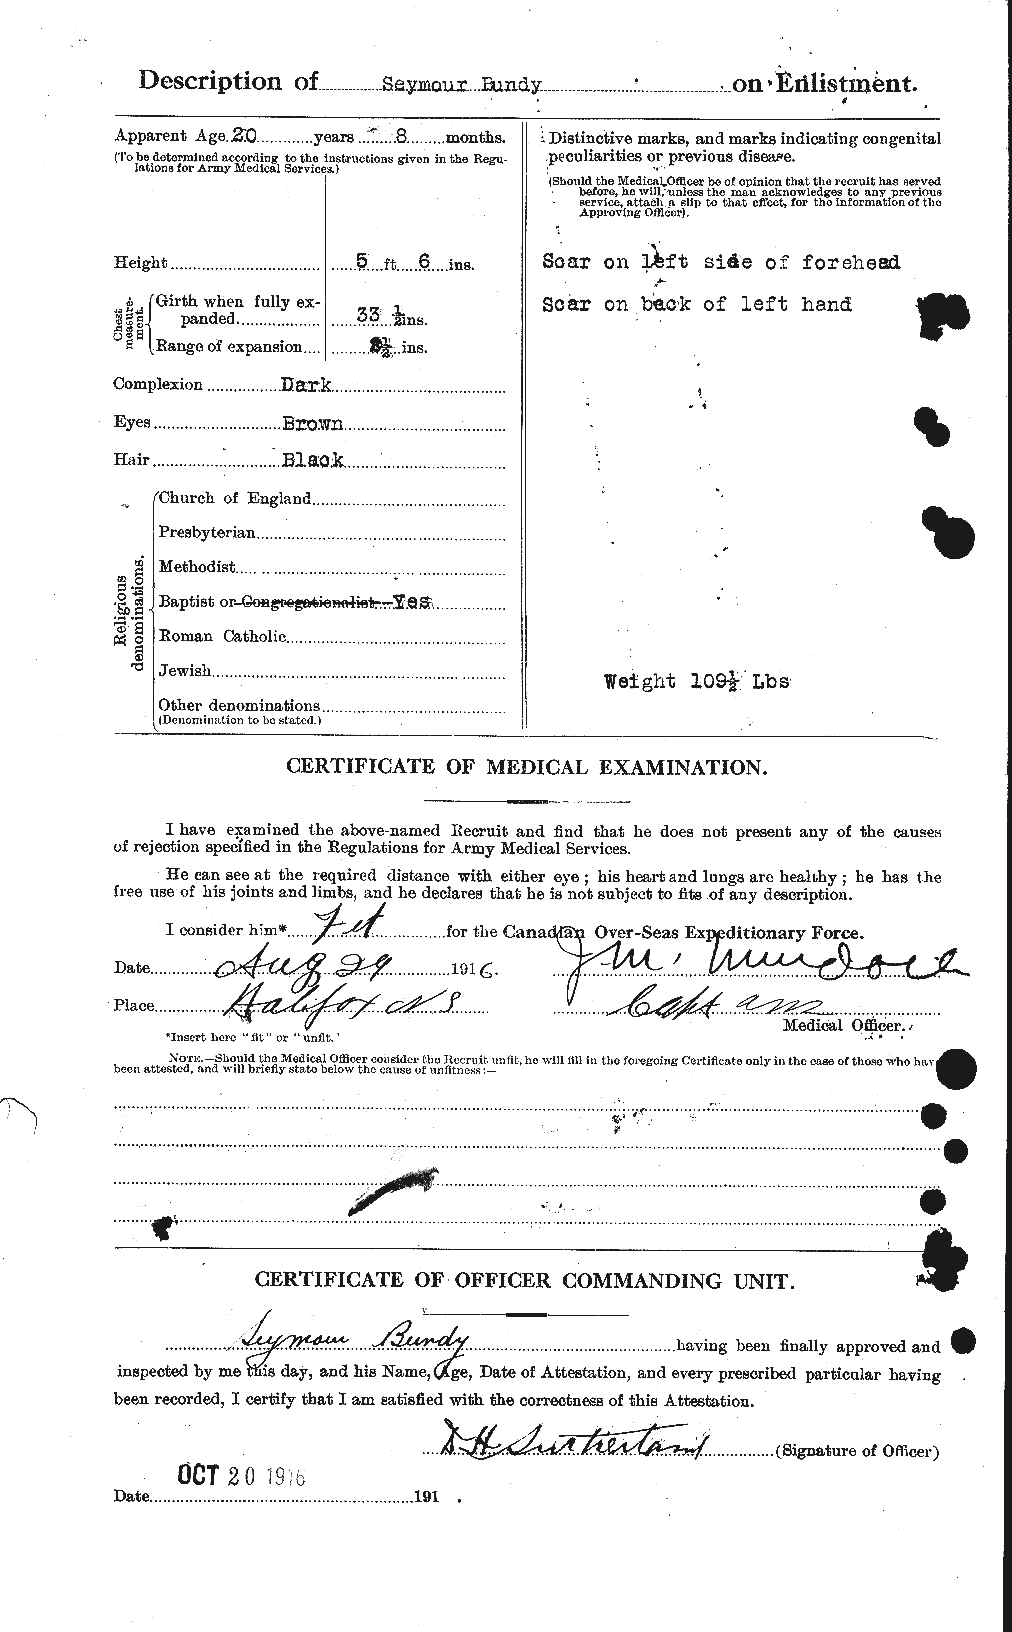 Dossiers du Personnel de la Première Guerre mondiale - CEC 270377b